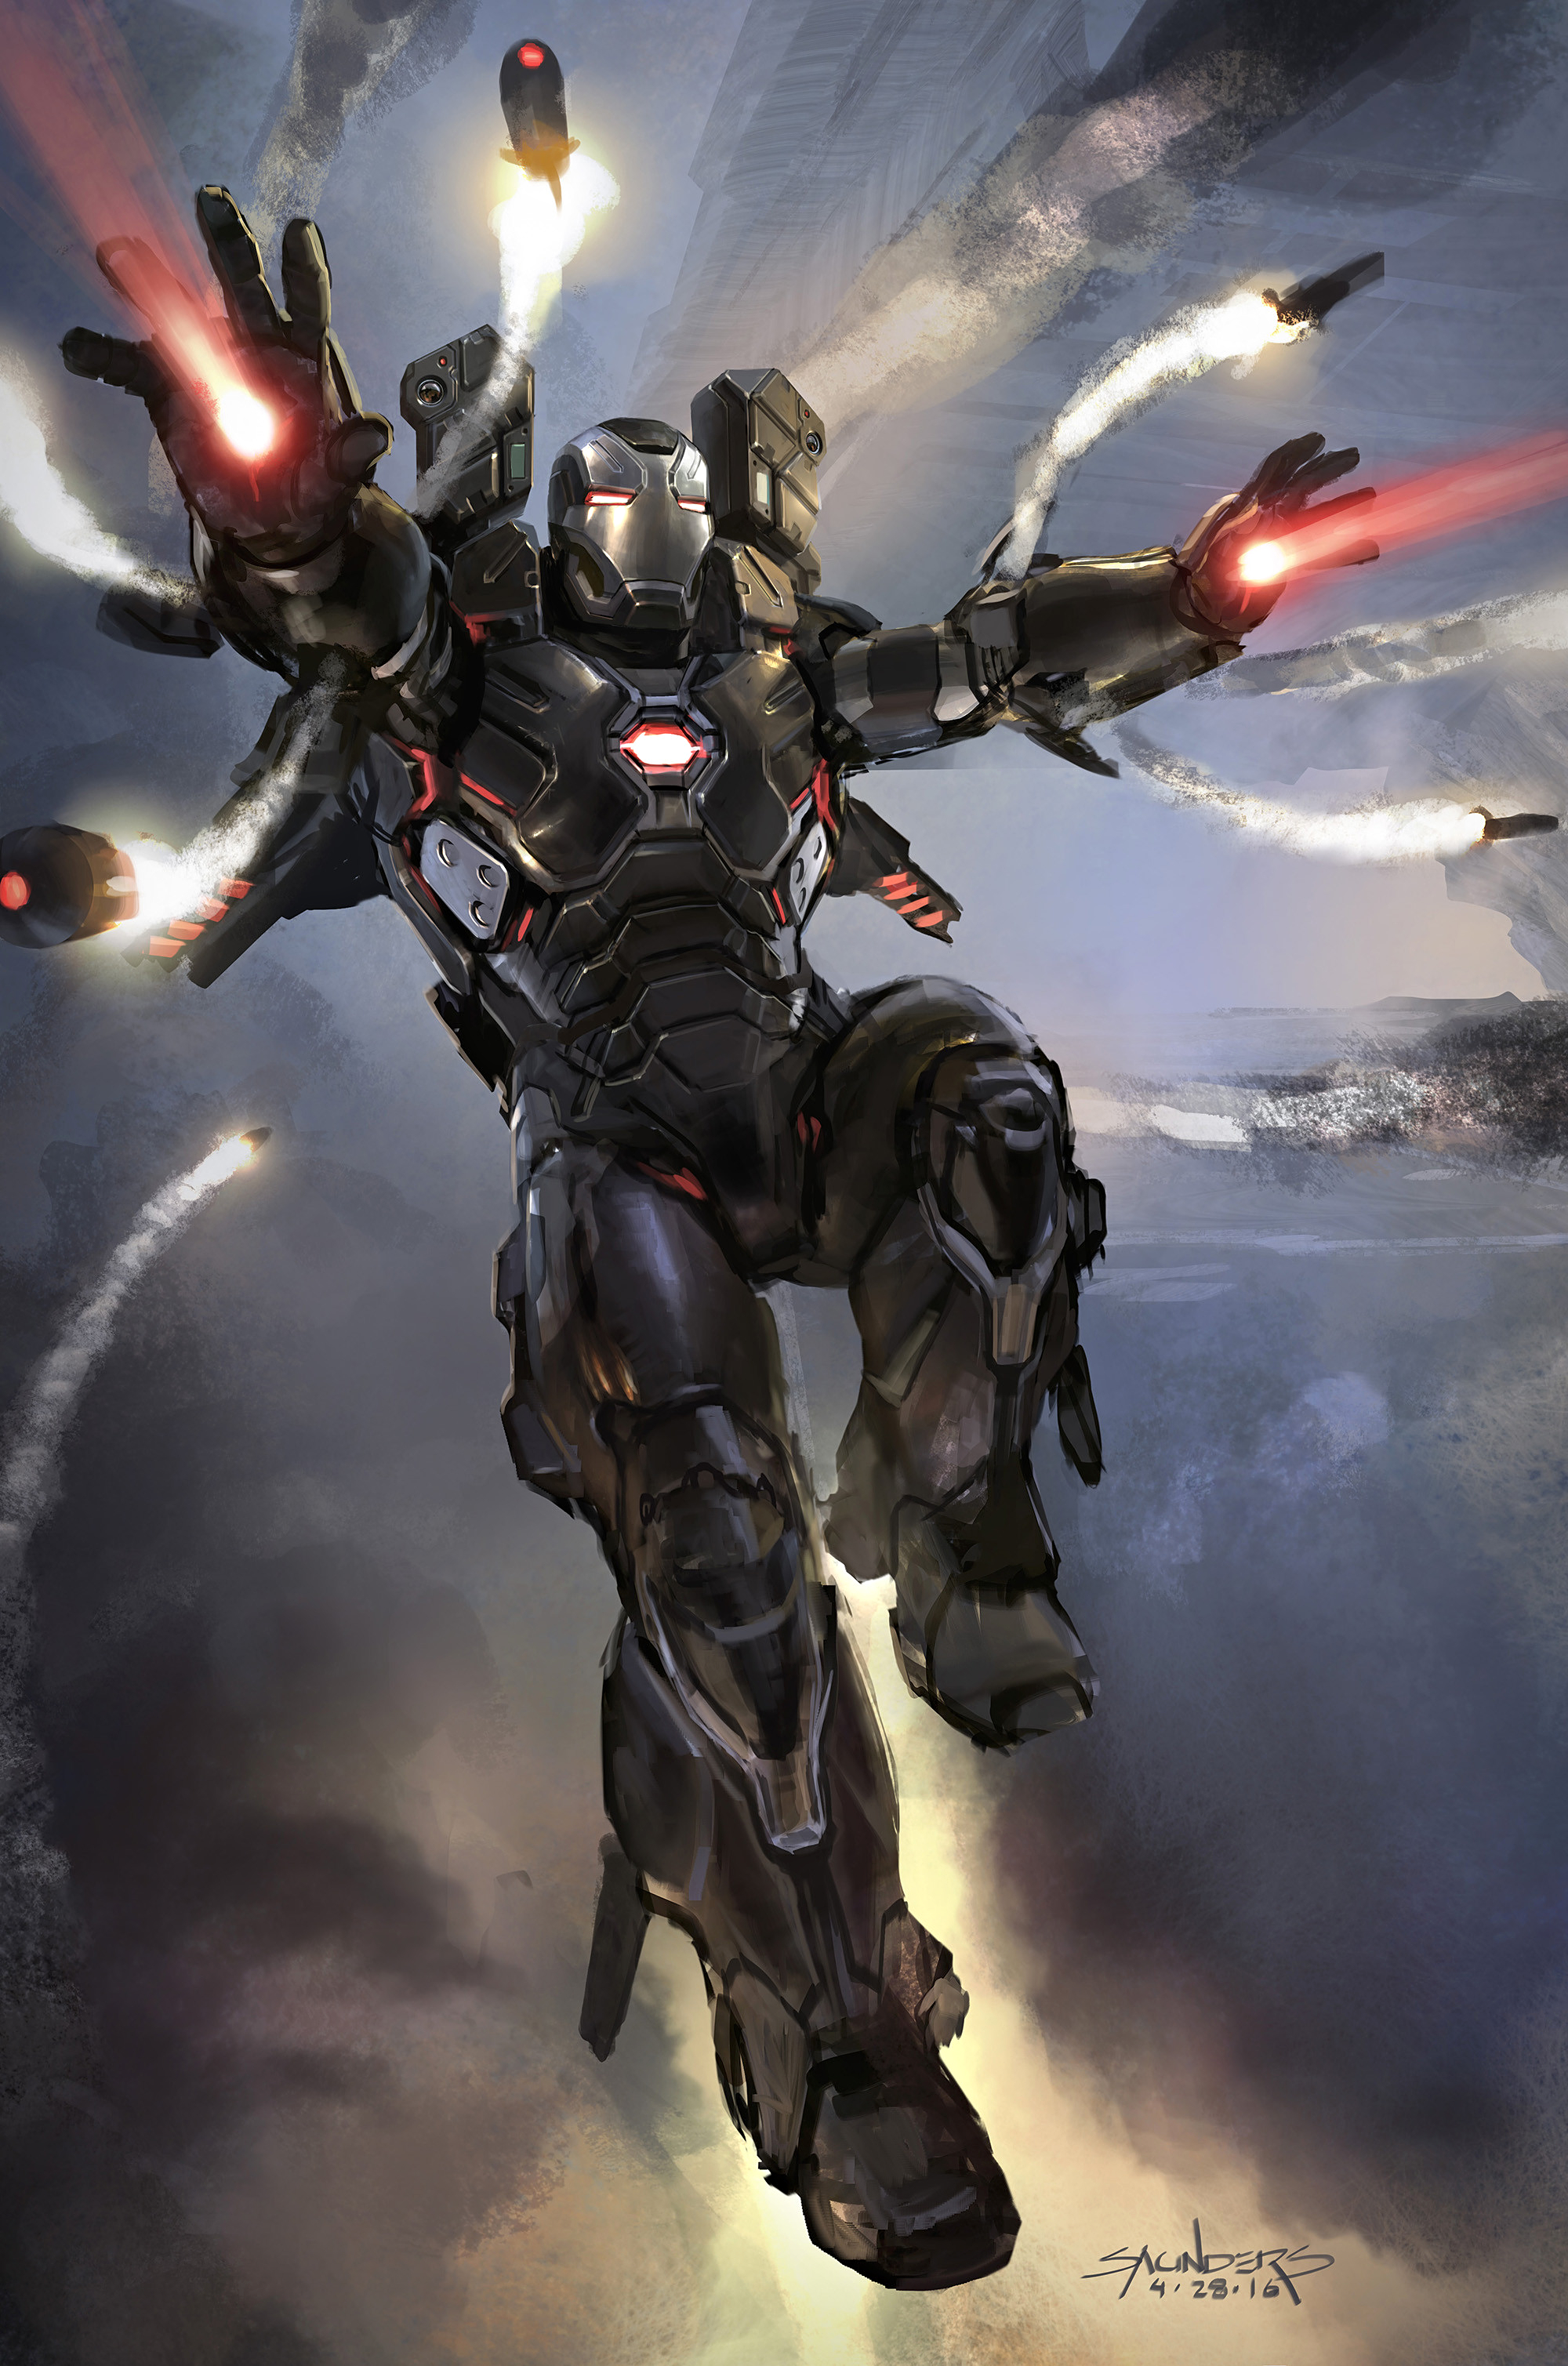 Image - Avengers Infinity War War Machine concept art 1 